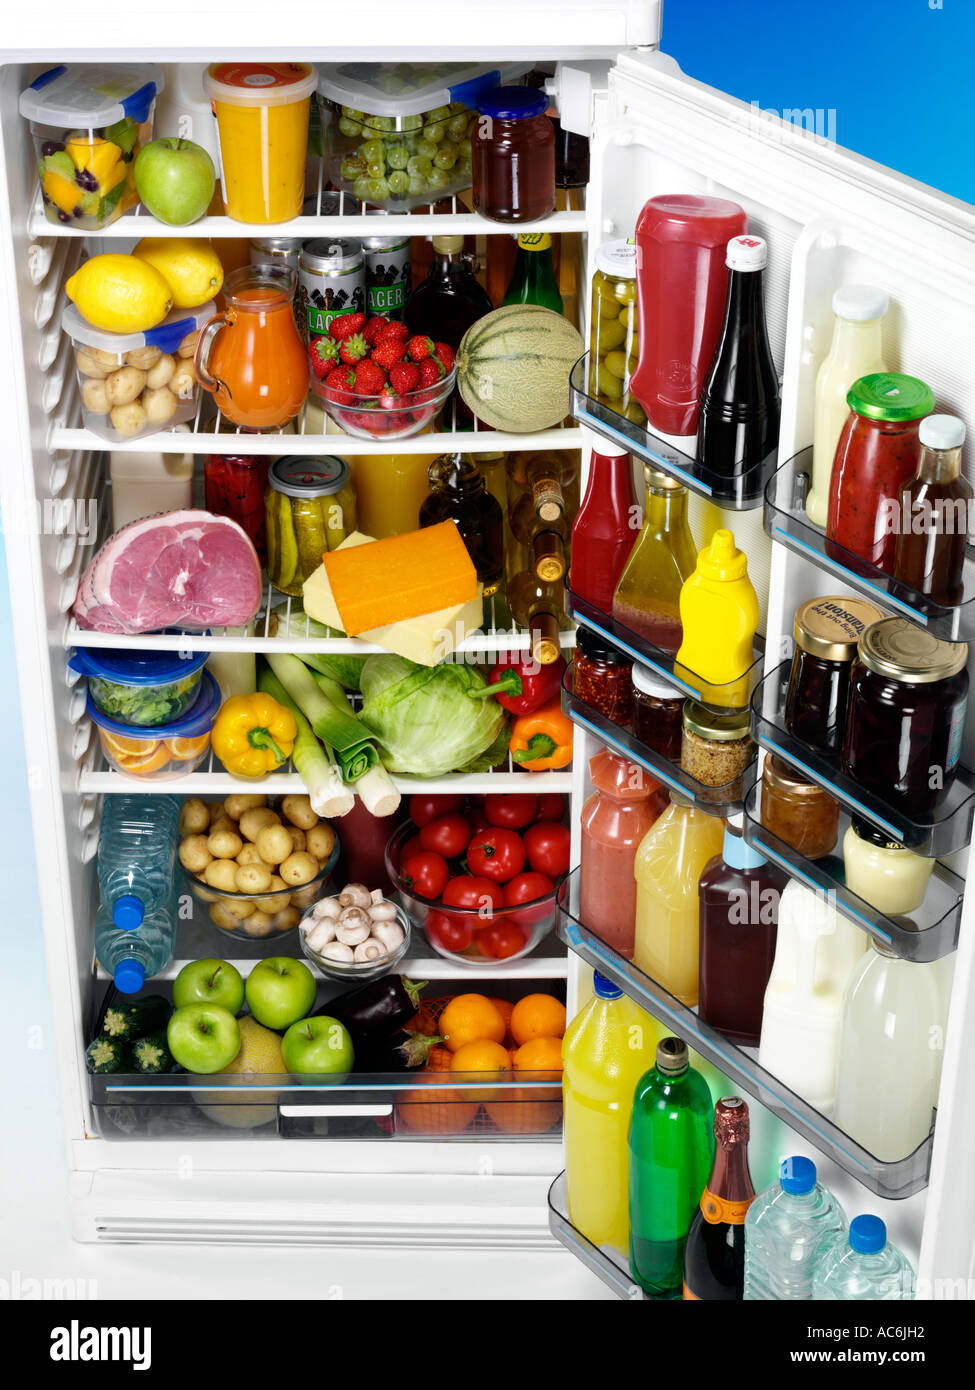 Товар всегда нужно. Холодильник с продуктами. Полный холодильник продуктов. Холодильник с едой. Полный холодильник фруктов.